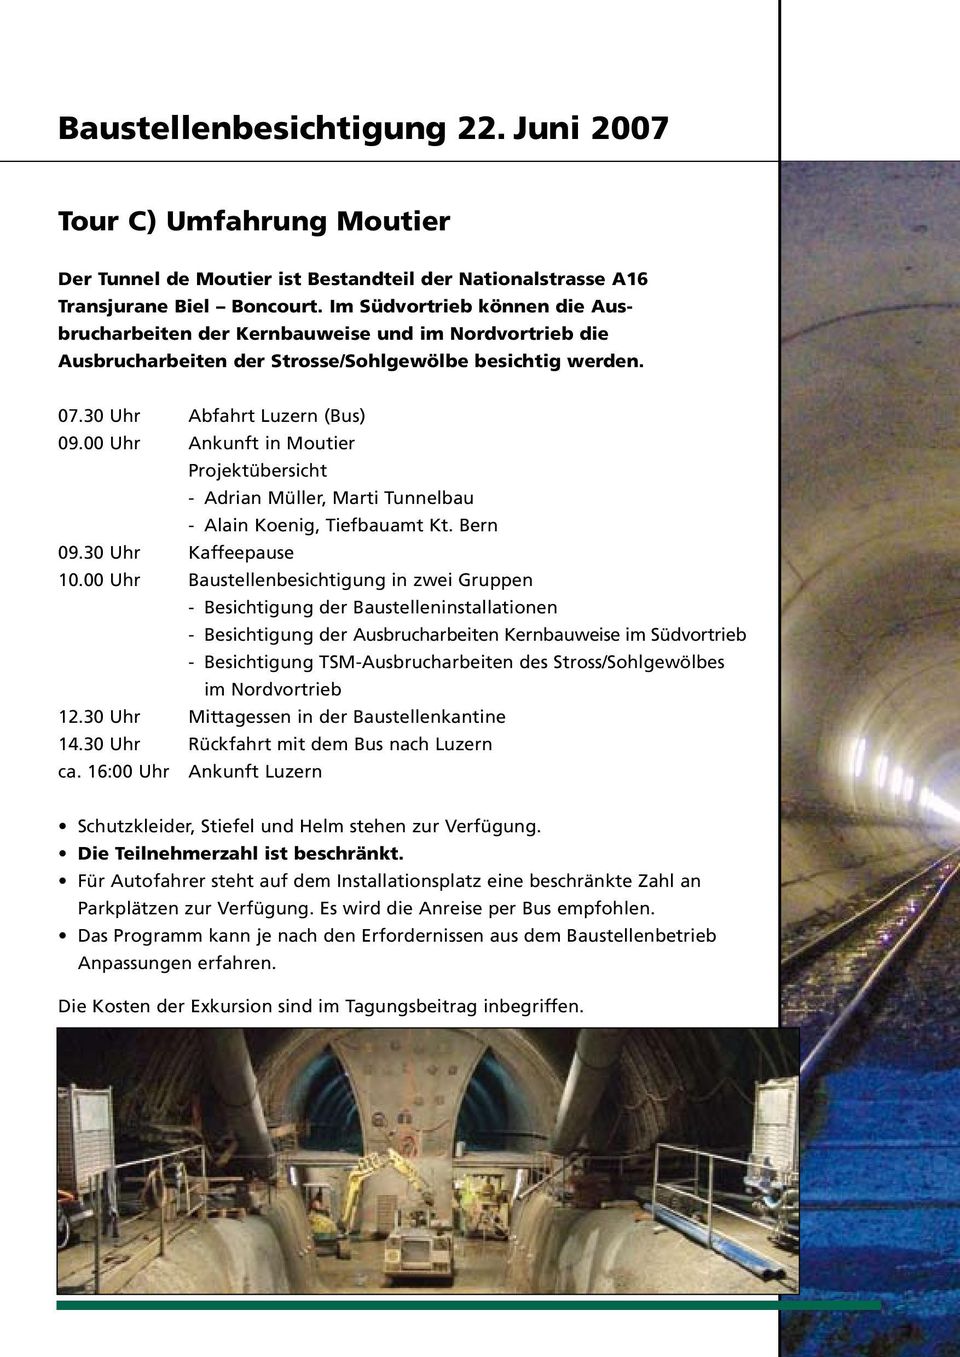 00 Uhr Ankunft in Moutier Projektübersicht - Adrian Müller, Marti Tunnelbau - Alain Koenig, Tiefbauamt Kt. Bern 09.30 Uhr Kaffeepause 10.